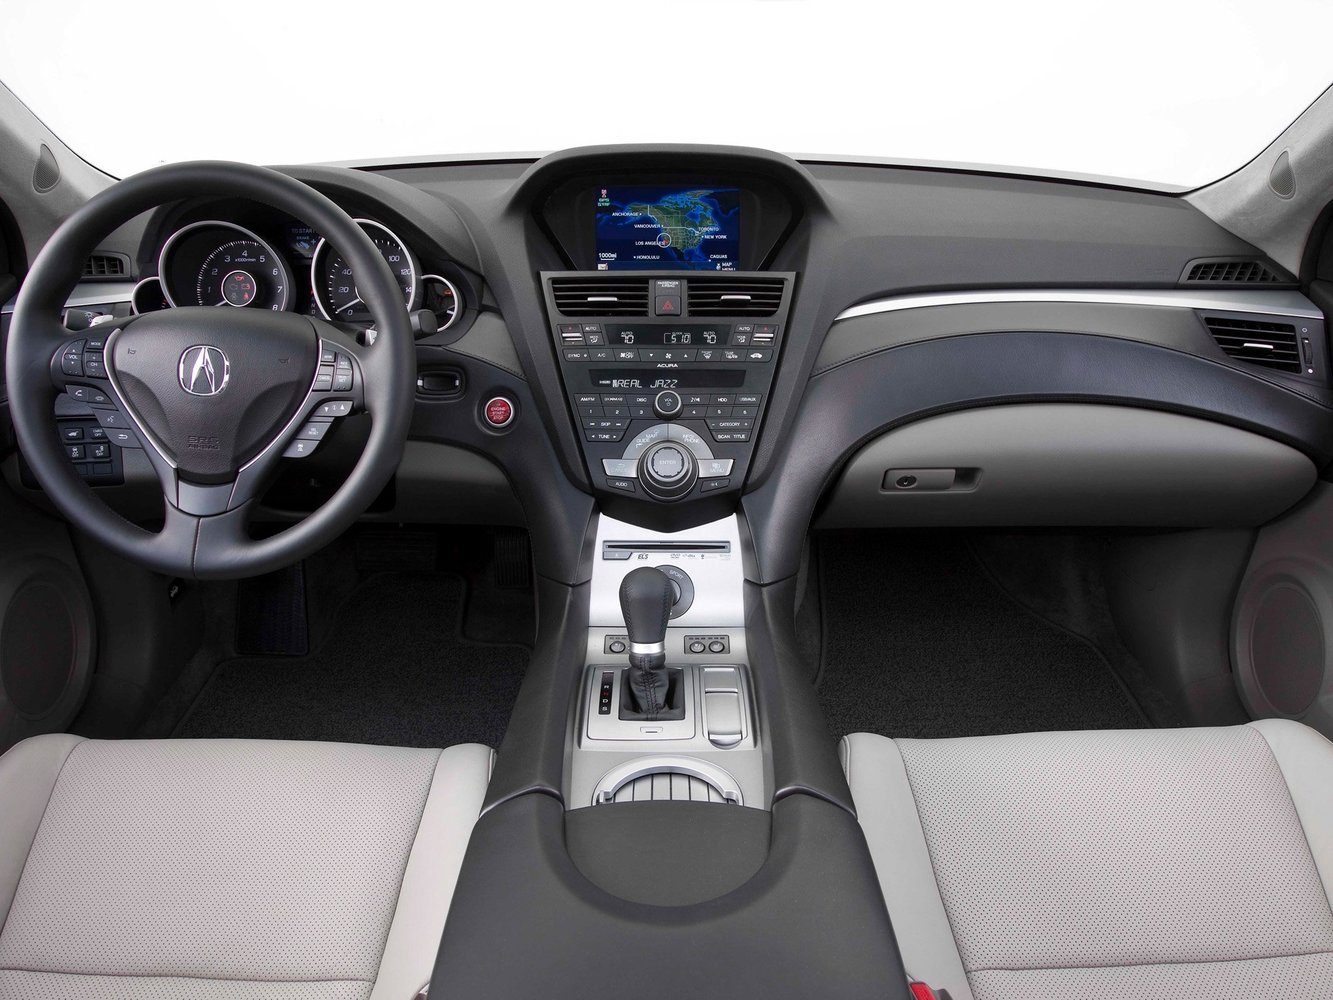 кроссовер Acura ZDX 2009 - 2014г выпуска модификация 3.7 AT (300 л.с.) 4×4